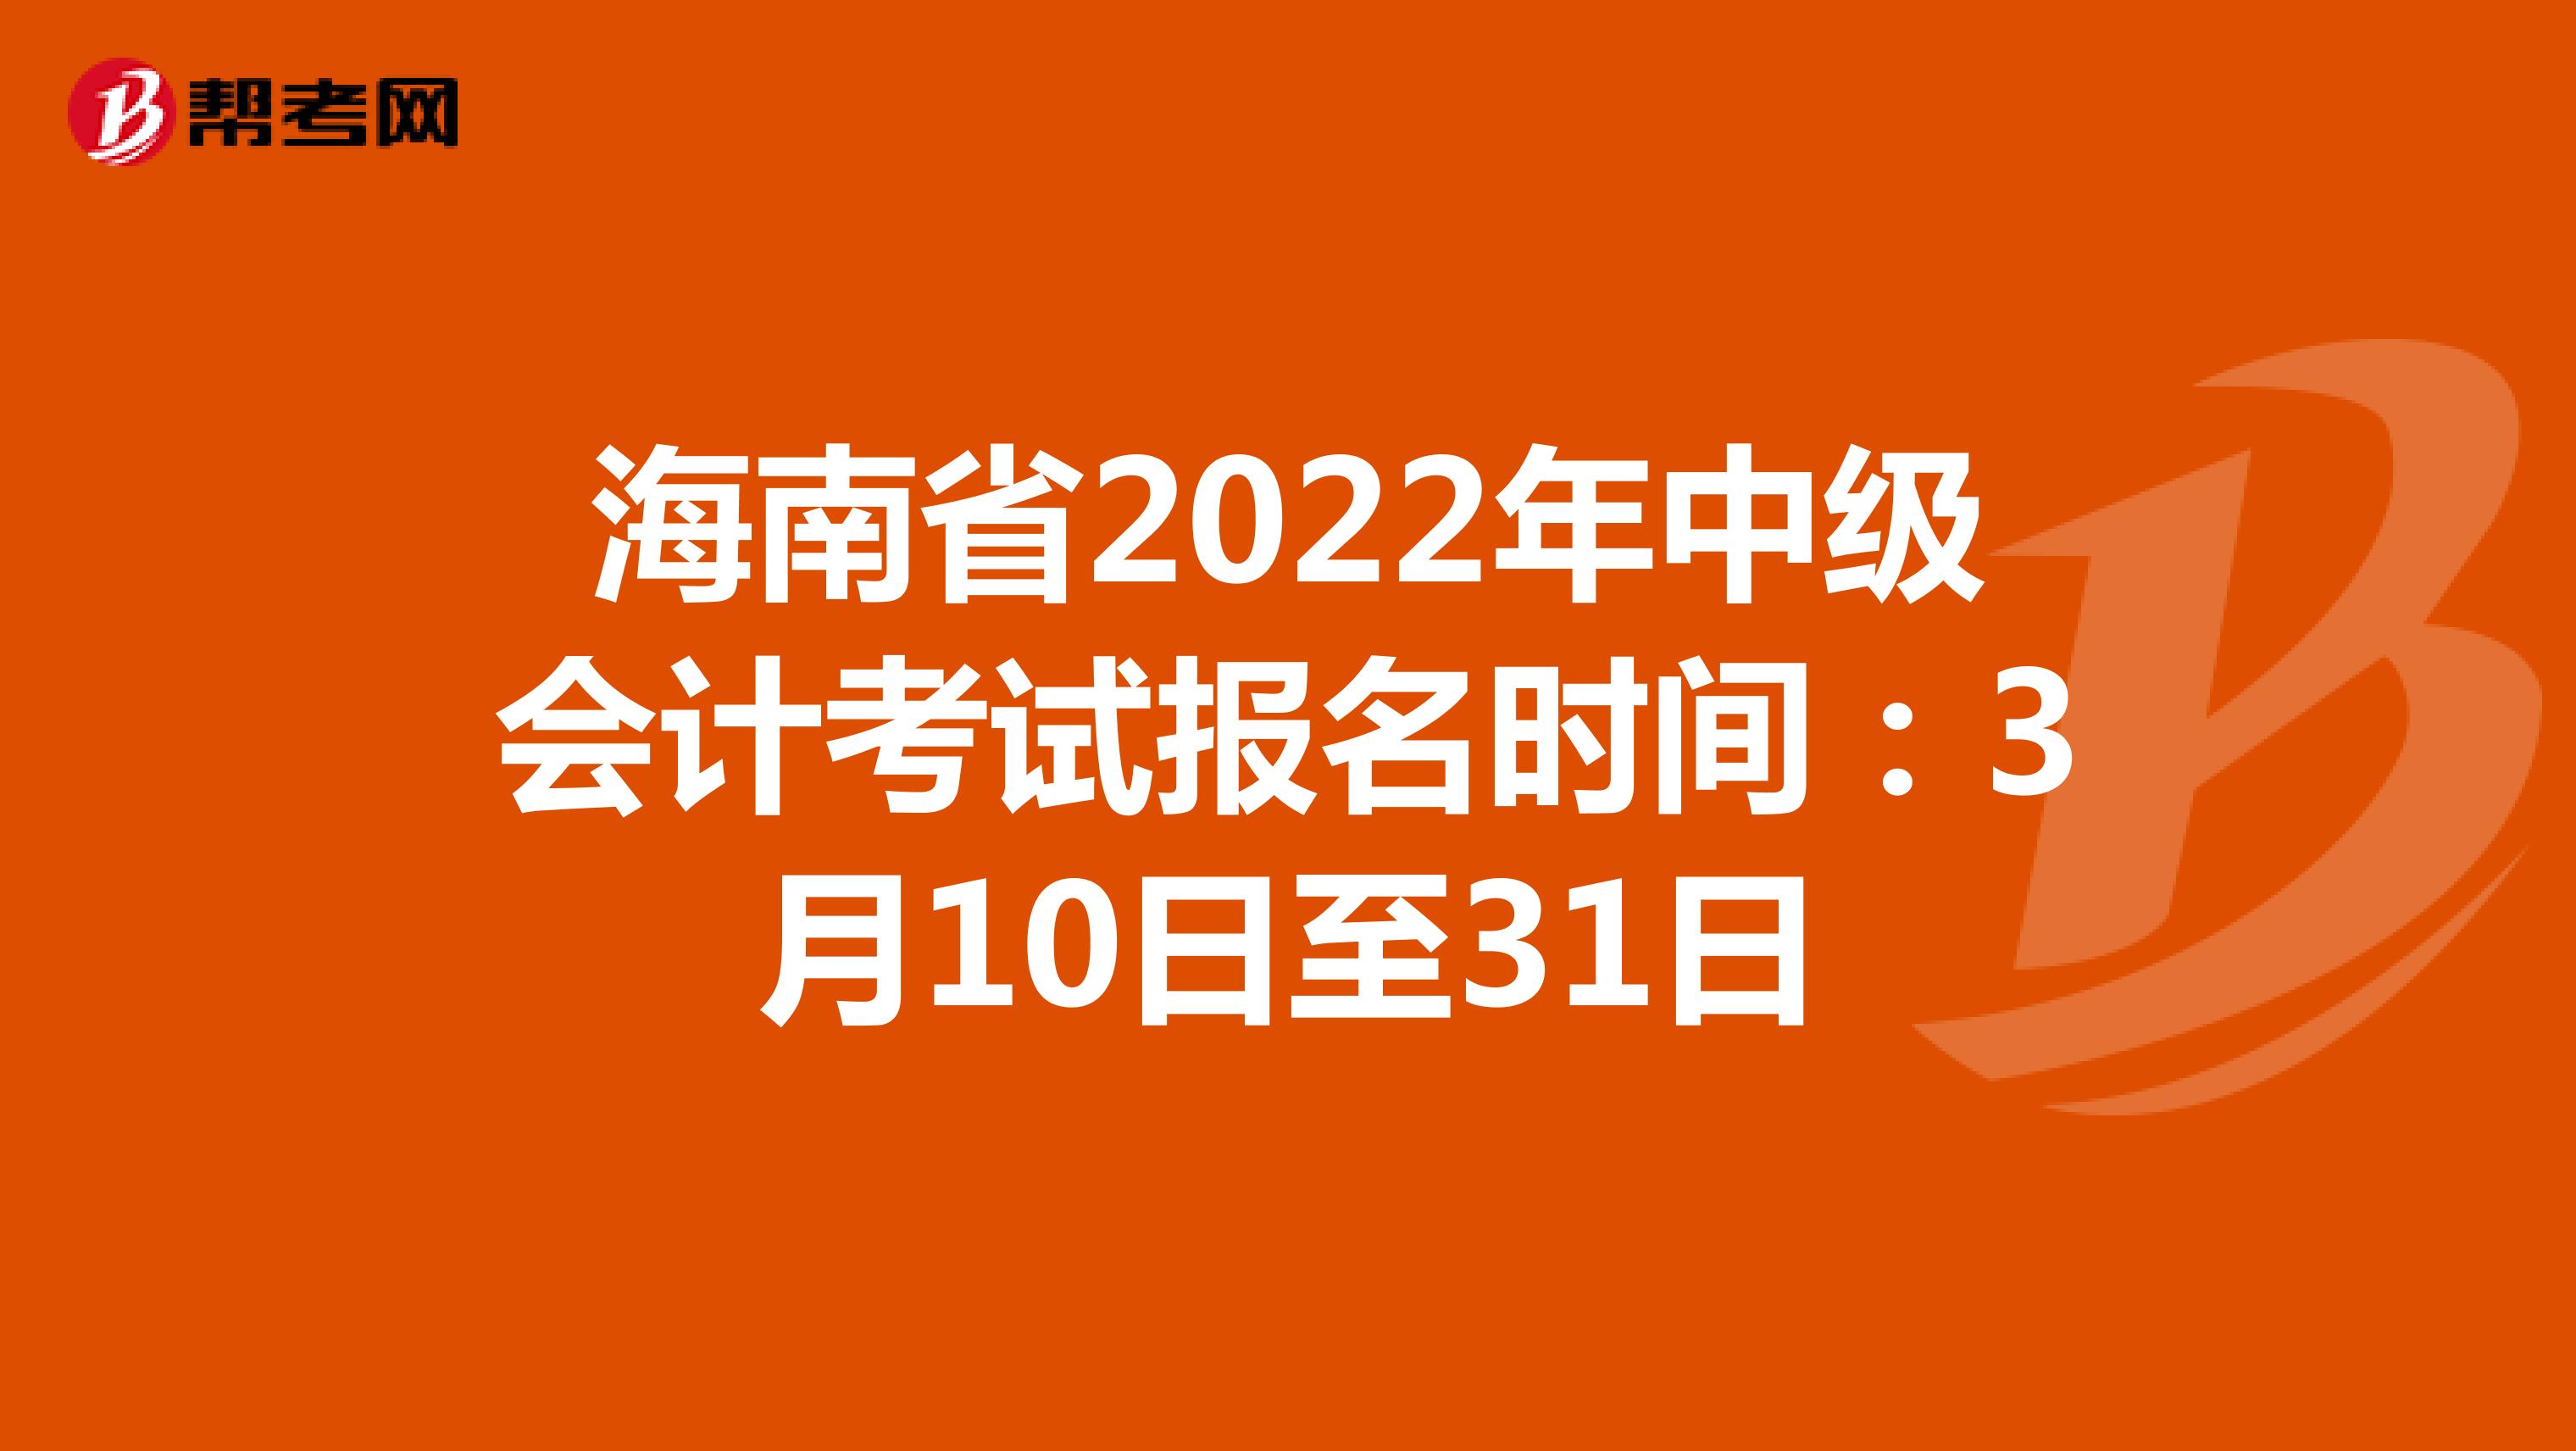 海南省2022年中级会计考试报名时间：3月10日至31日